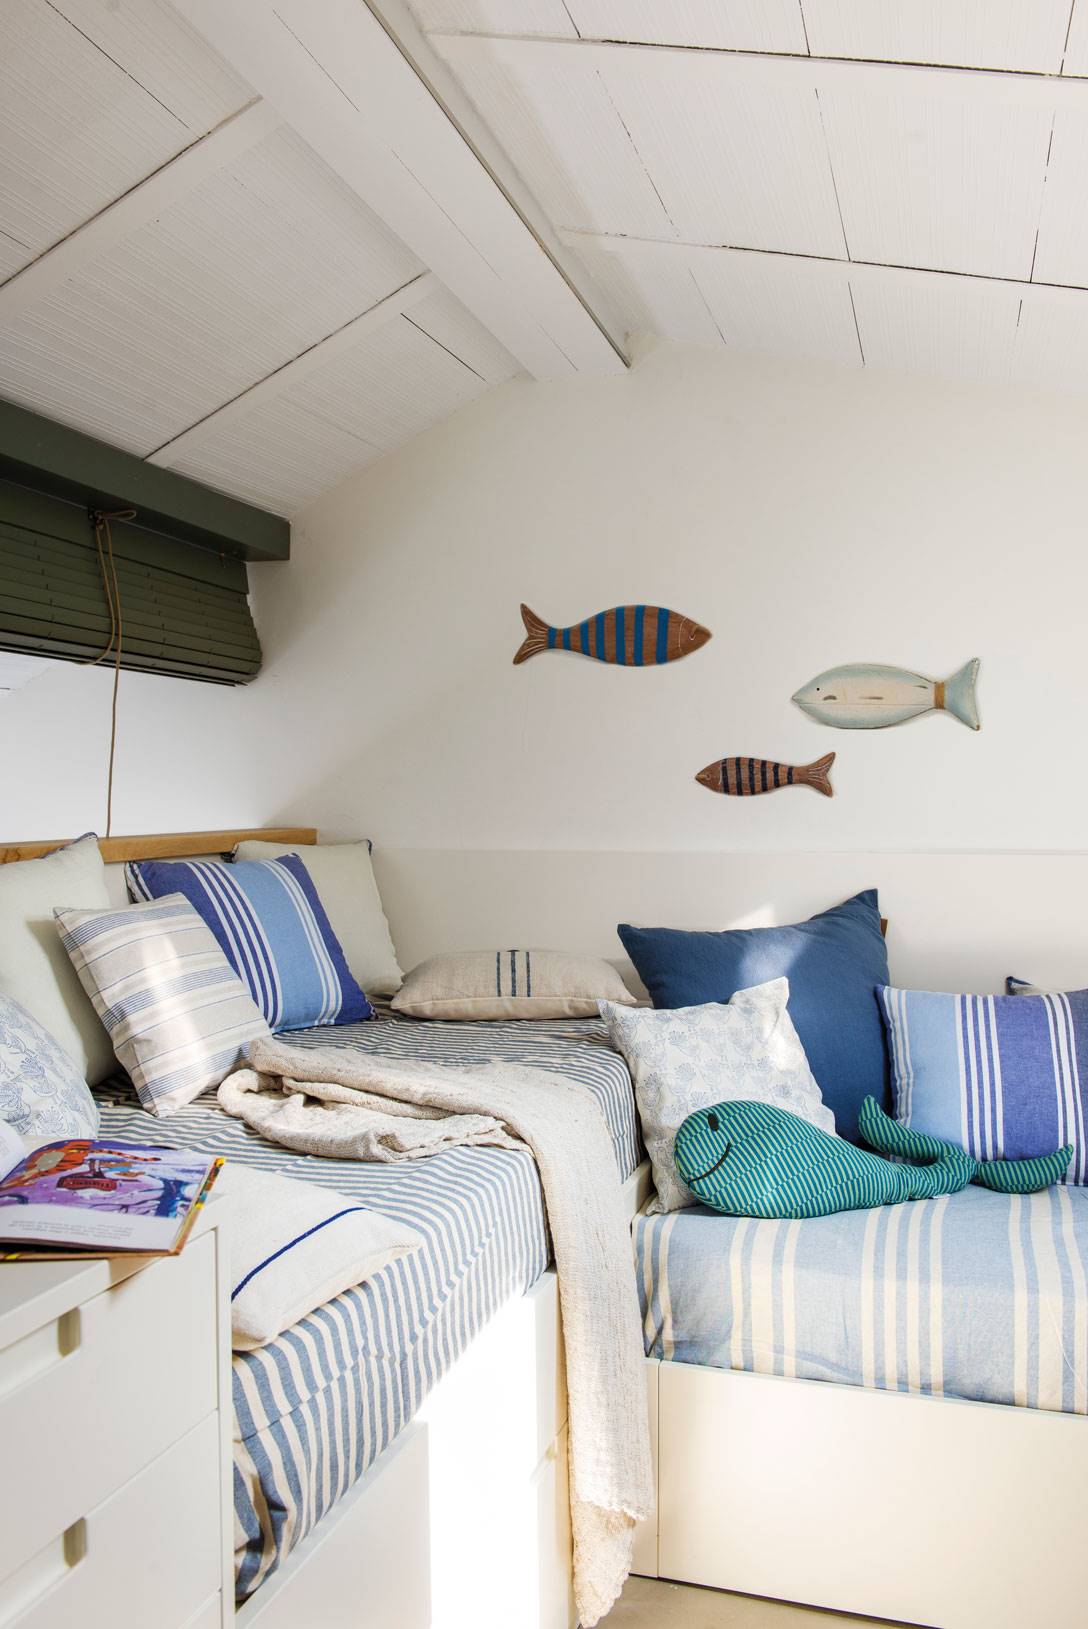 Dormitorio marinero en blanco y azul con dos camas y peces decorativos en la pared.